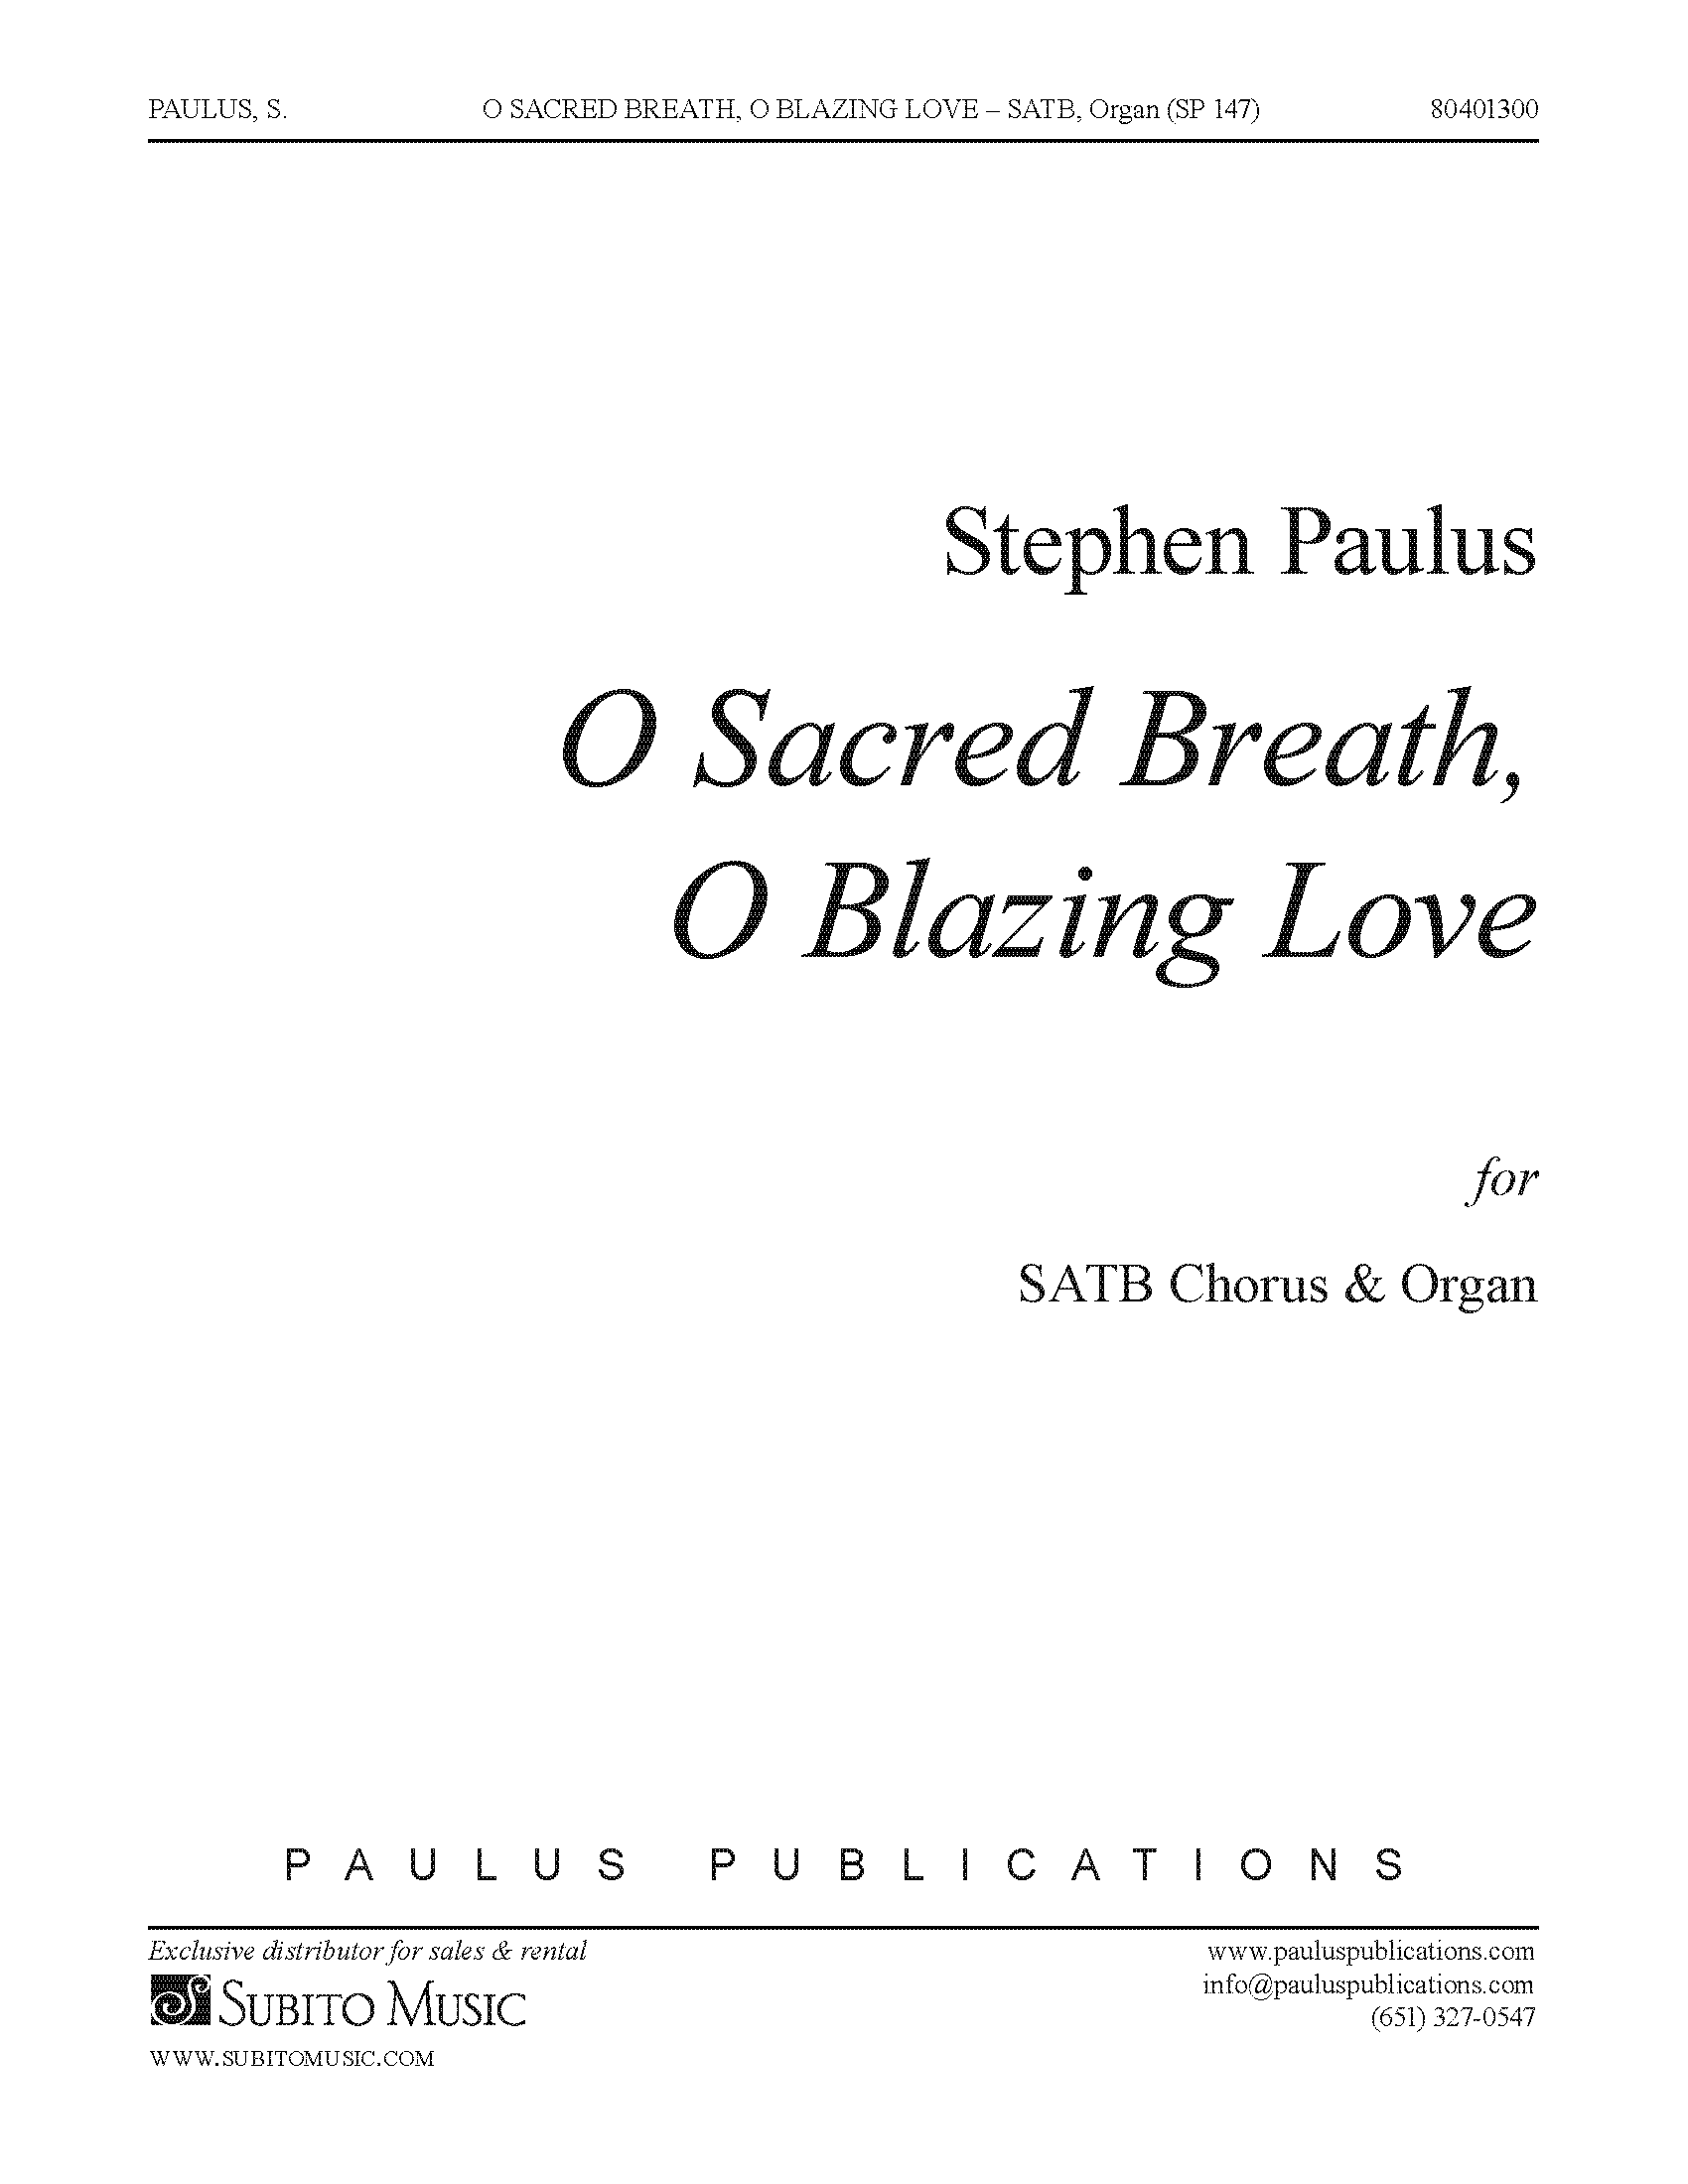 O Sacred Breath, O Blazing Love for SATB Chorus & Organ